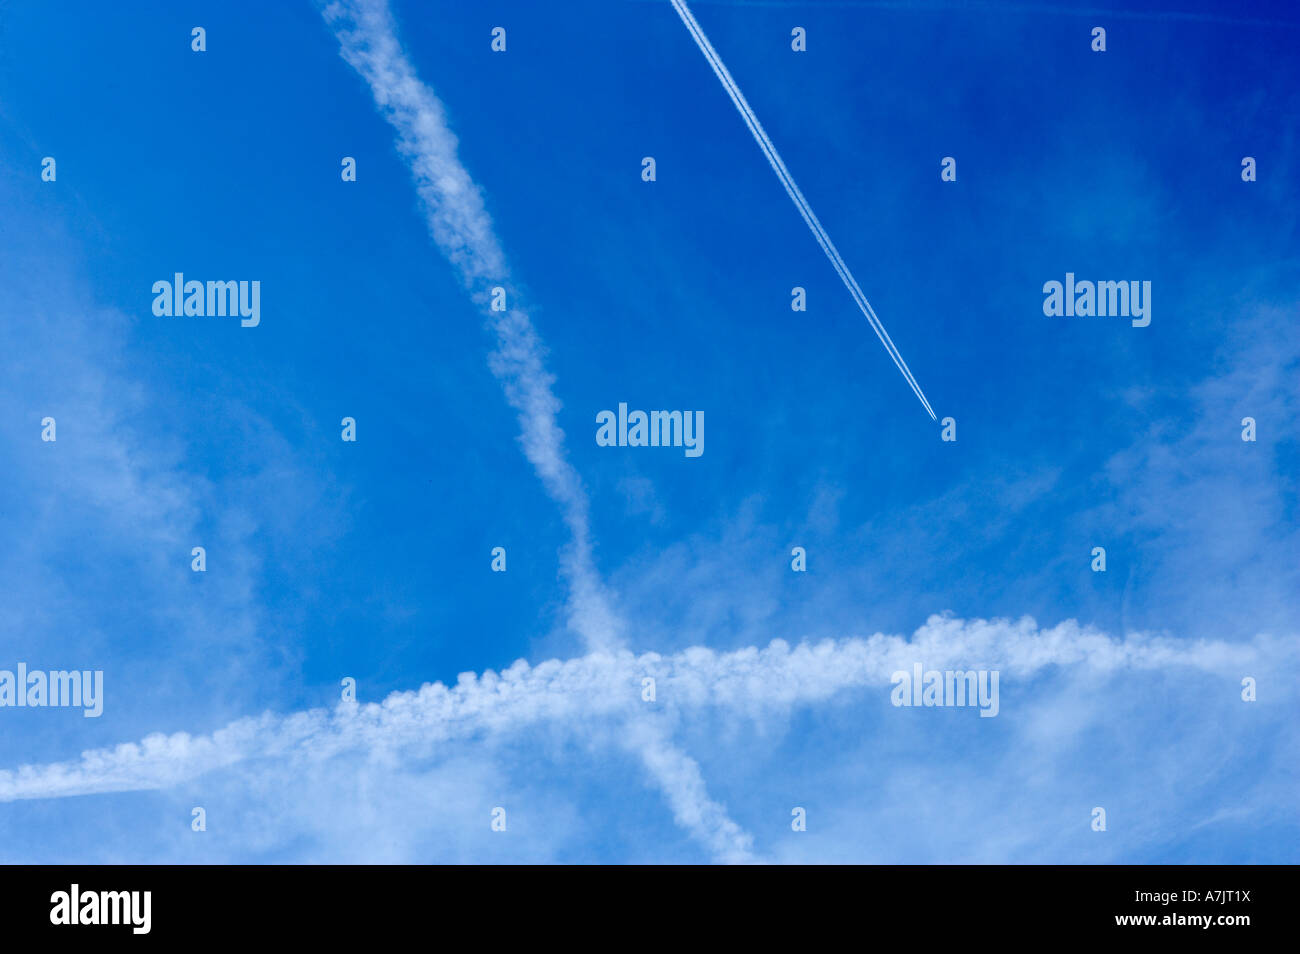 Velivoli a getto di scarico attraversa sentieri di cielo blu chiaro Foto Stock